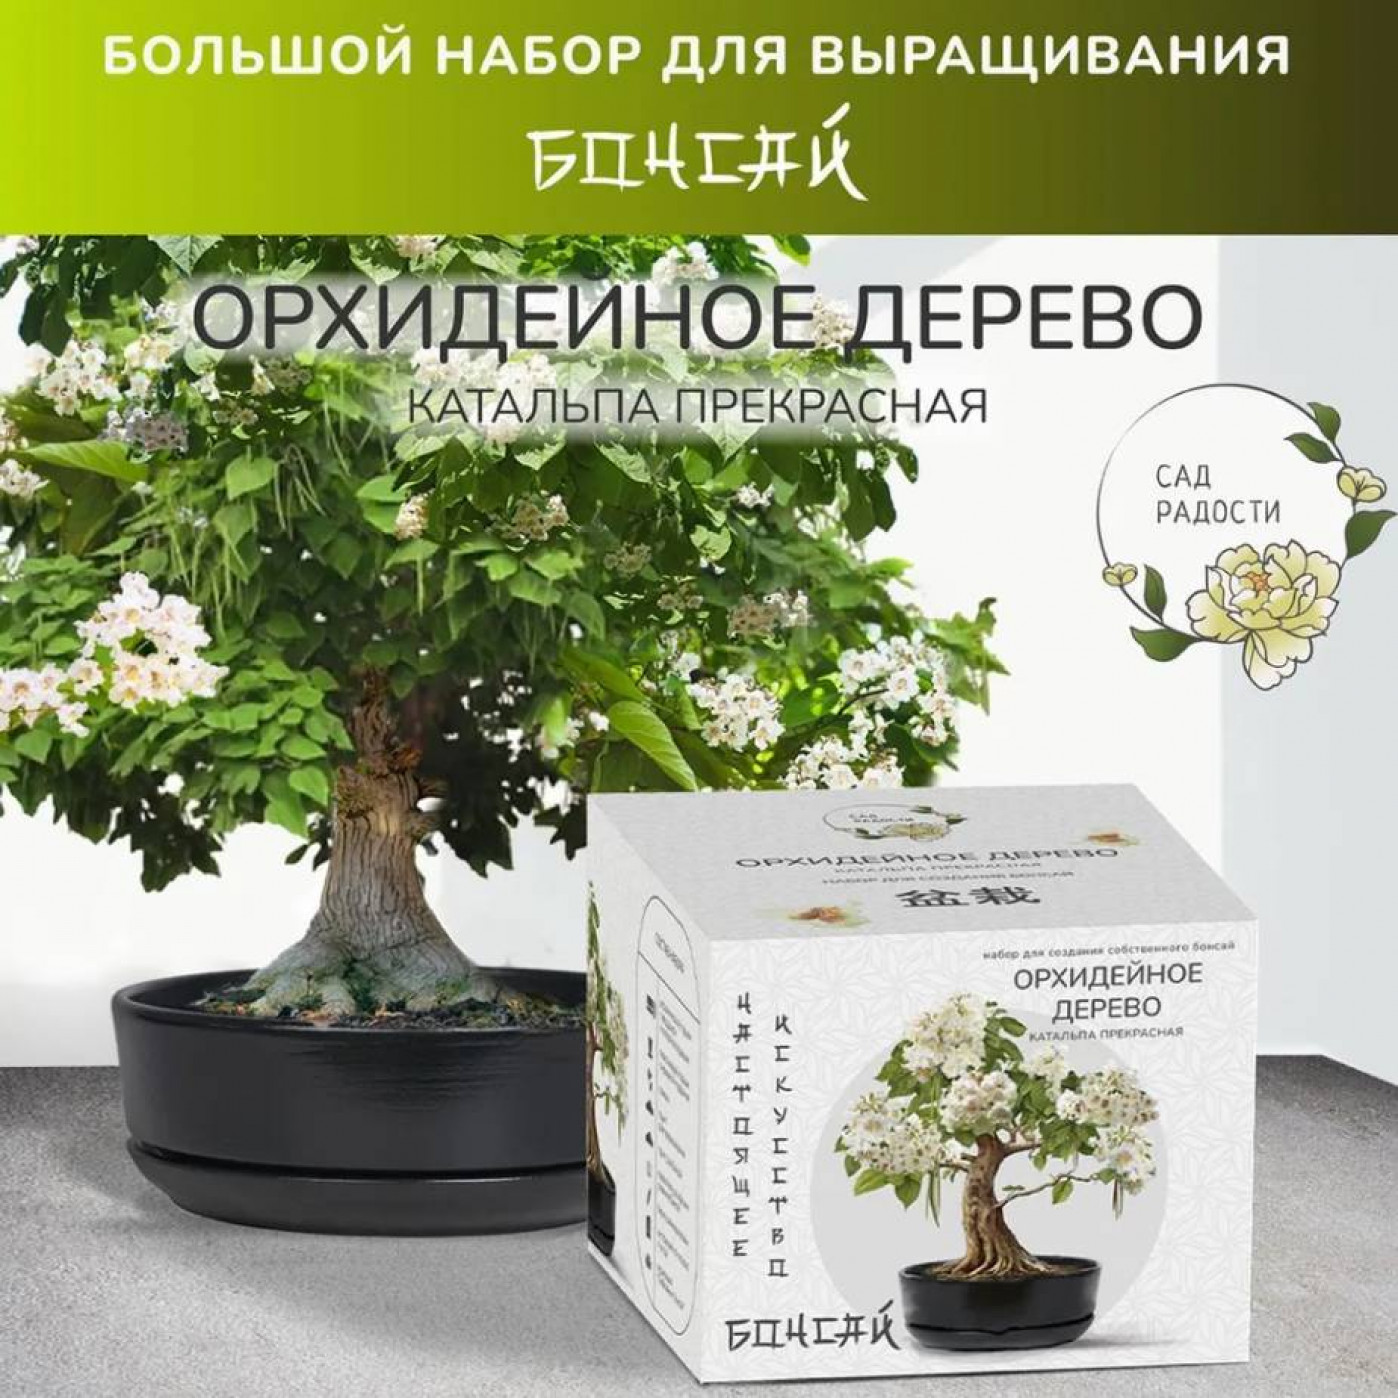 Большой набор для выращивания бонсай Катальпа орхидейное дерево купить в интернет-магазине, подарки по низким ценам